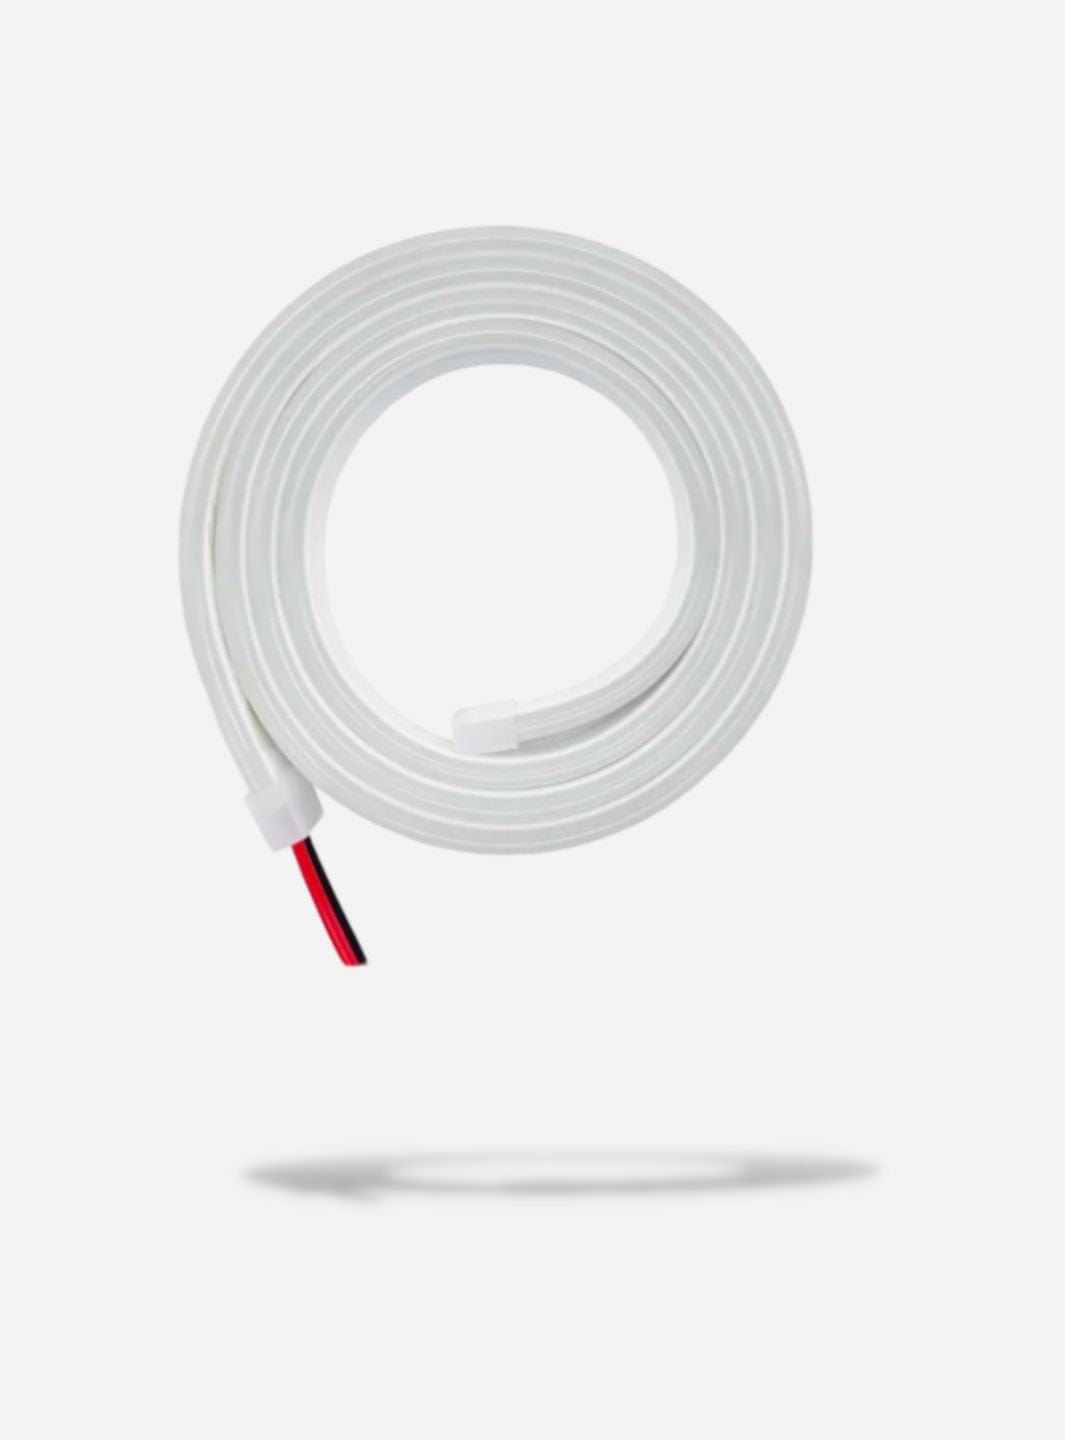 Néon LED flexible blanc Blanc / 1m